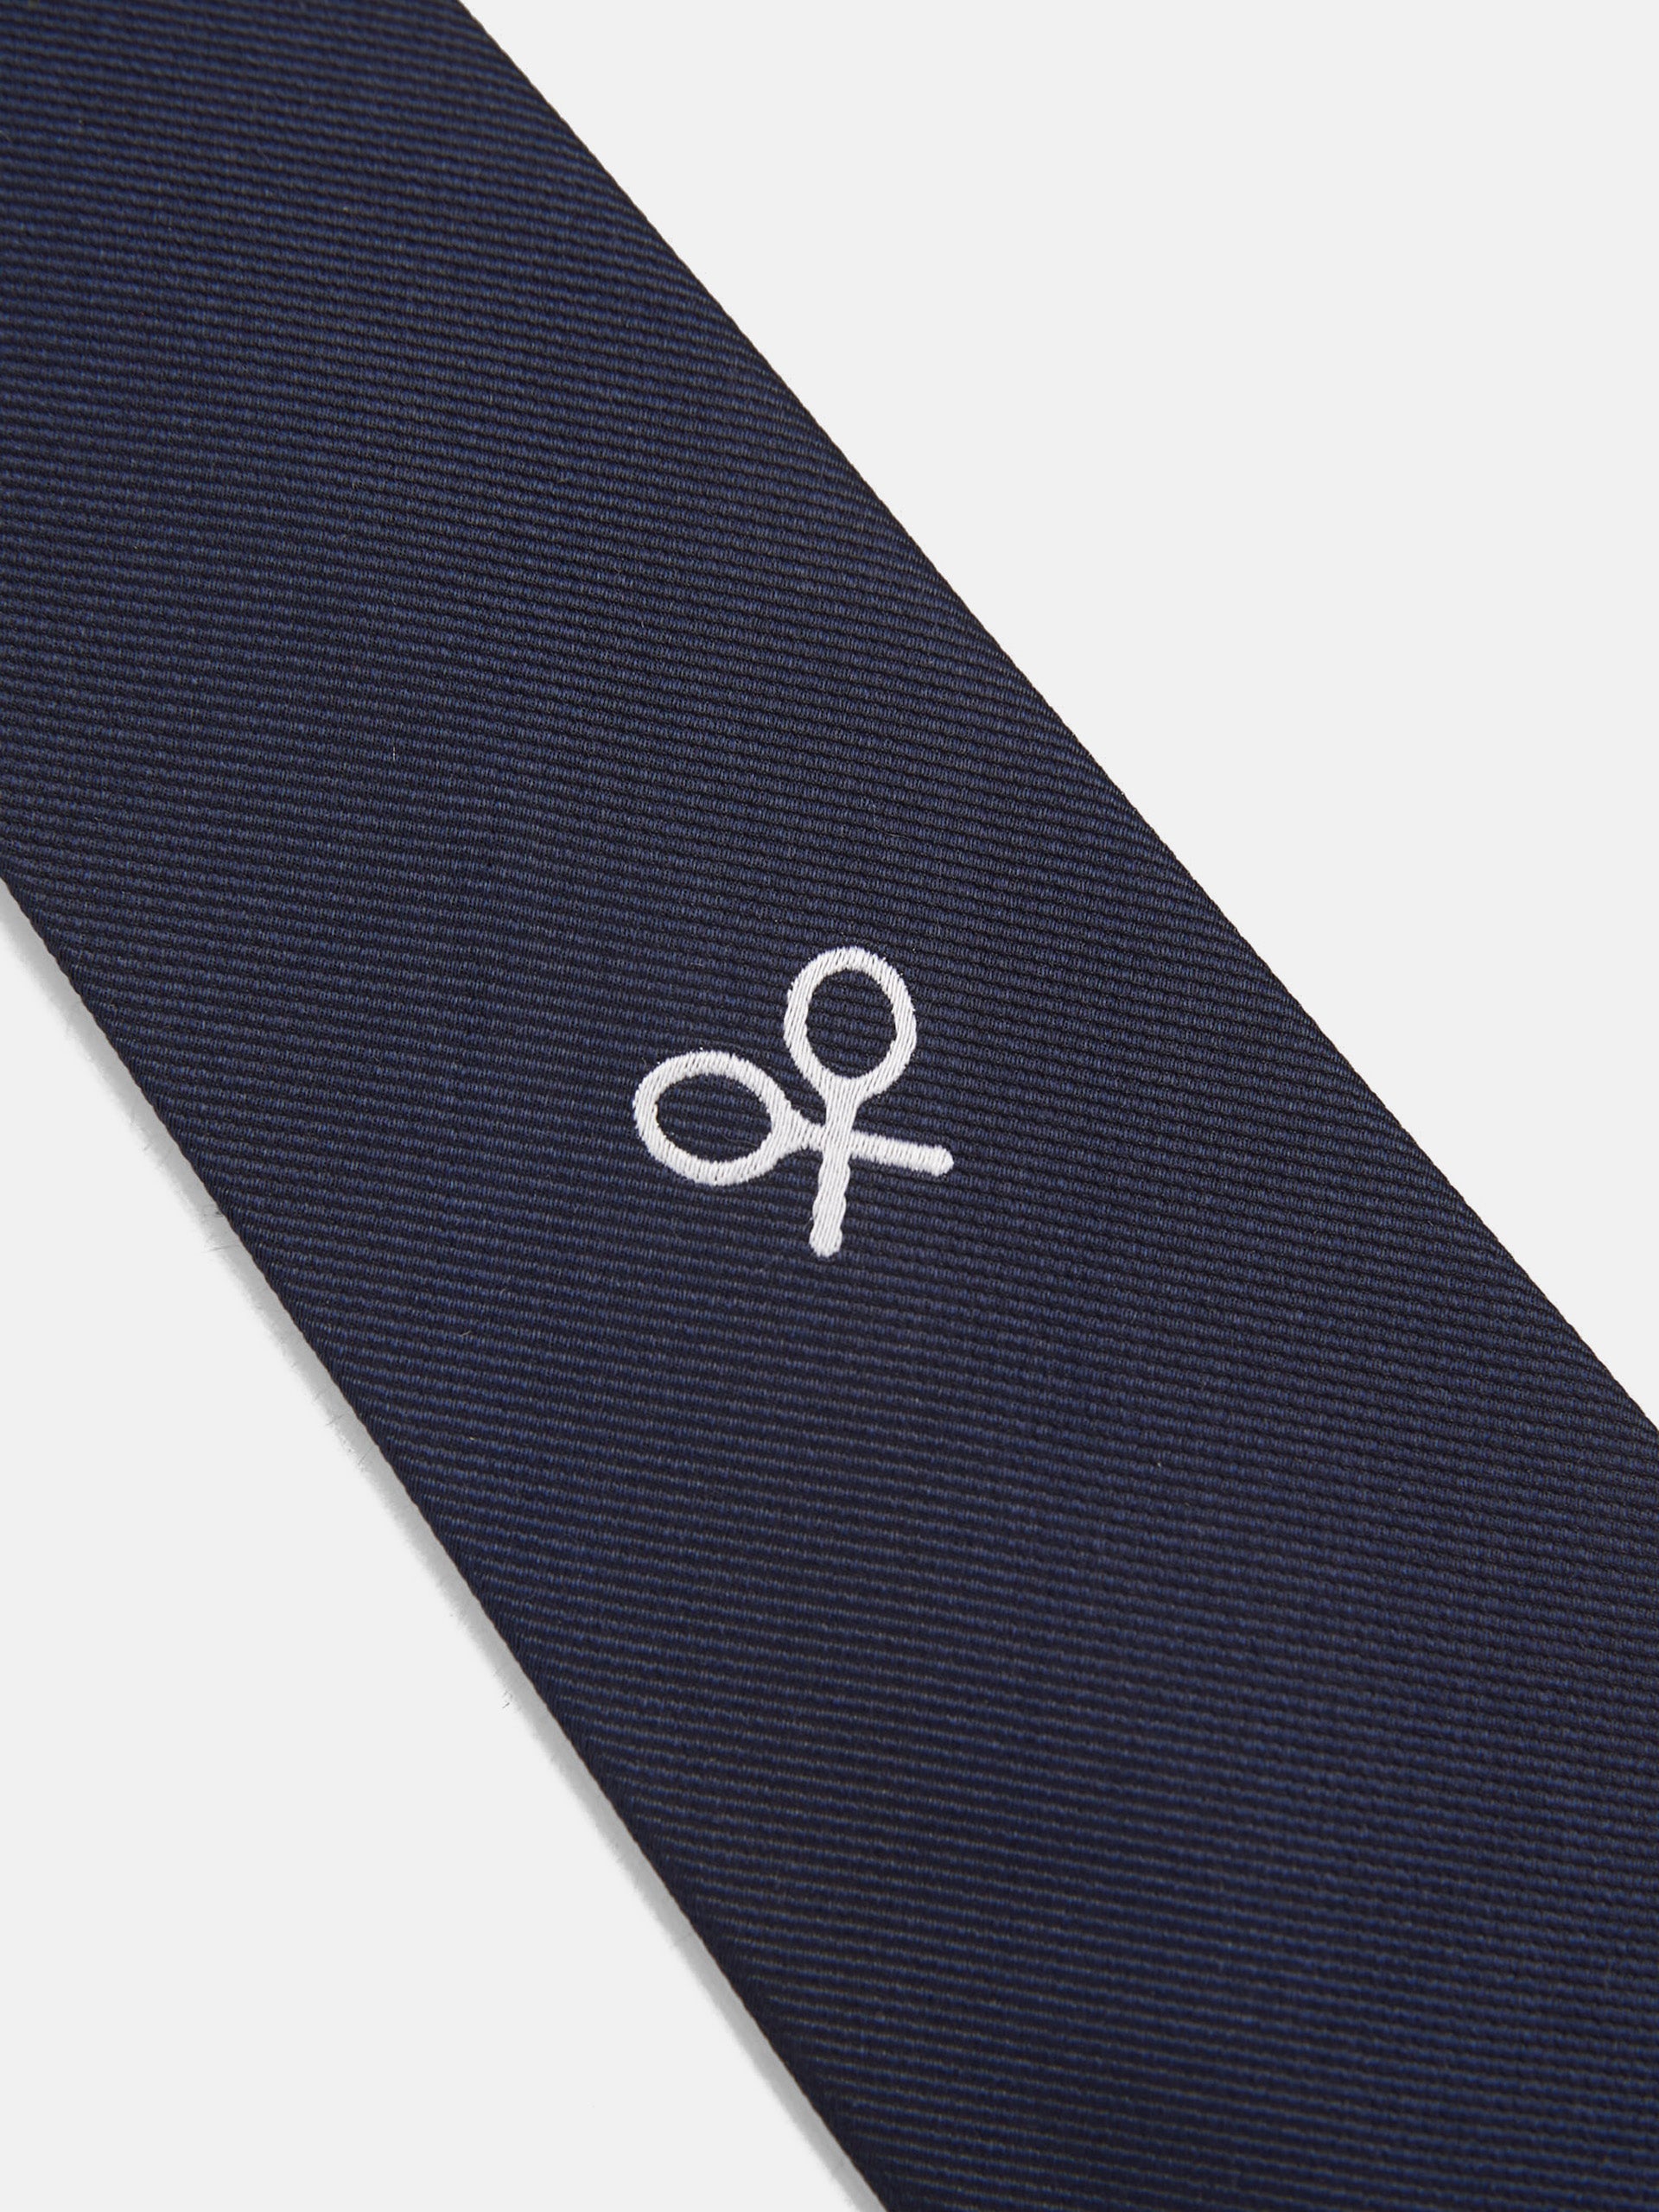 Cravate maxi logo bleu marine